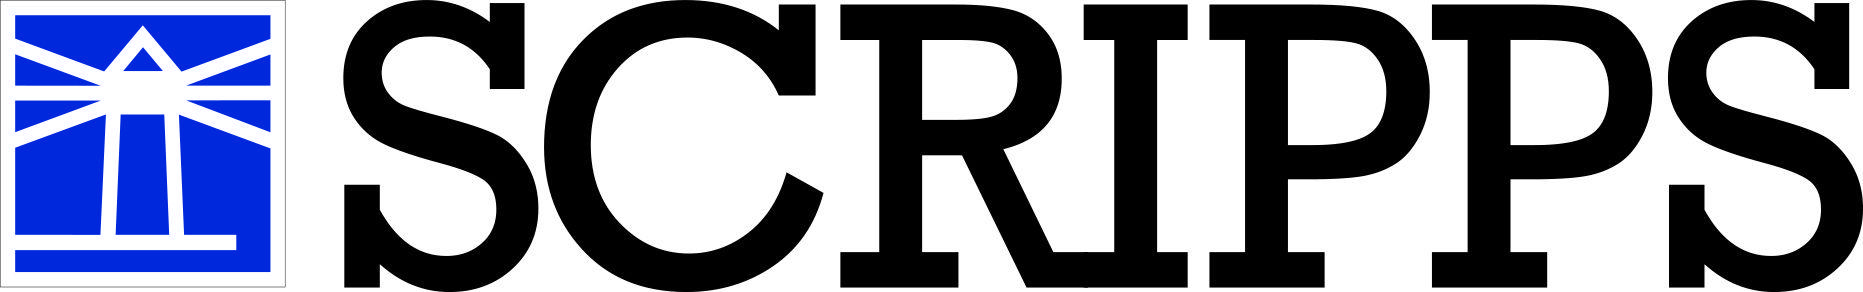 Scripps Logo - Scripps Logos